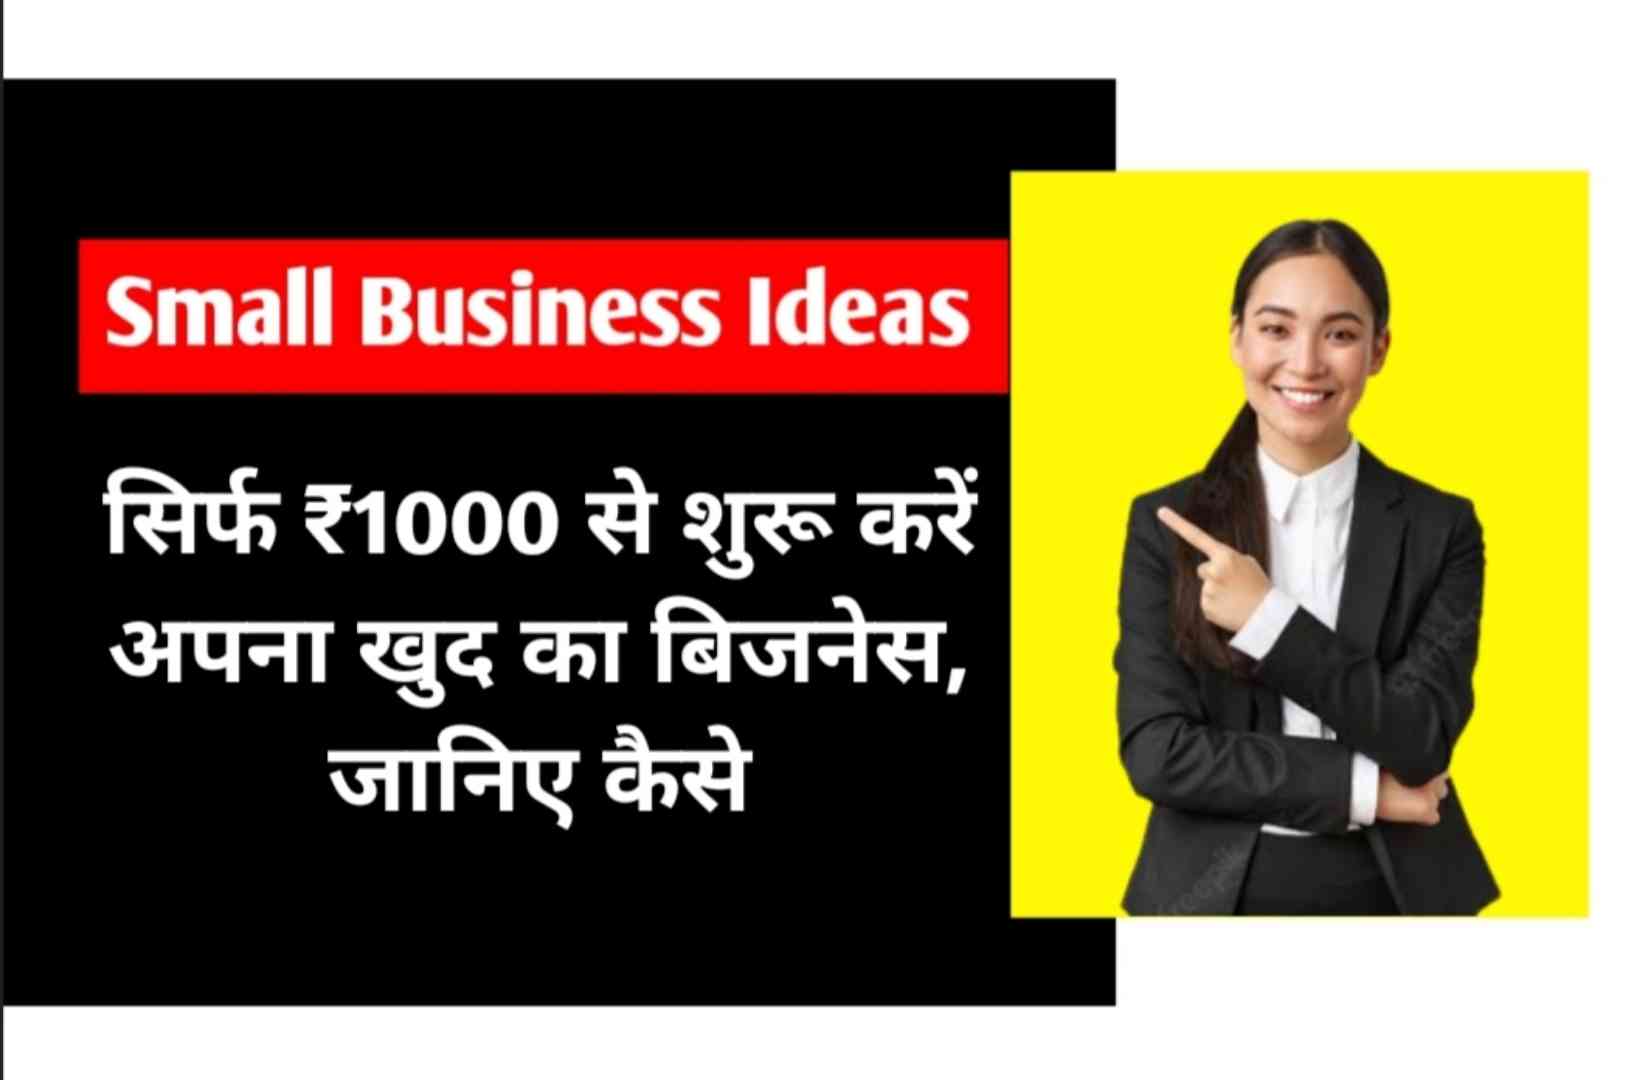 Small Business Ideas : सिर्फ ₹1000 से शुरू करें अपना खुद का बिजनेस